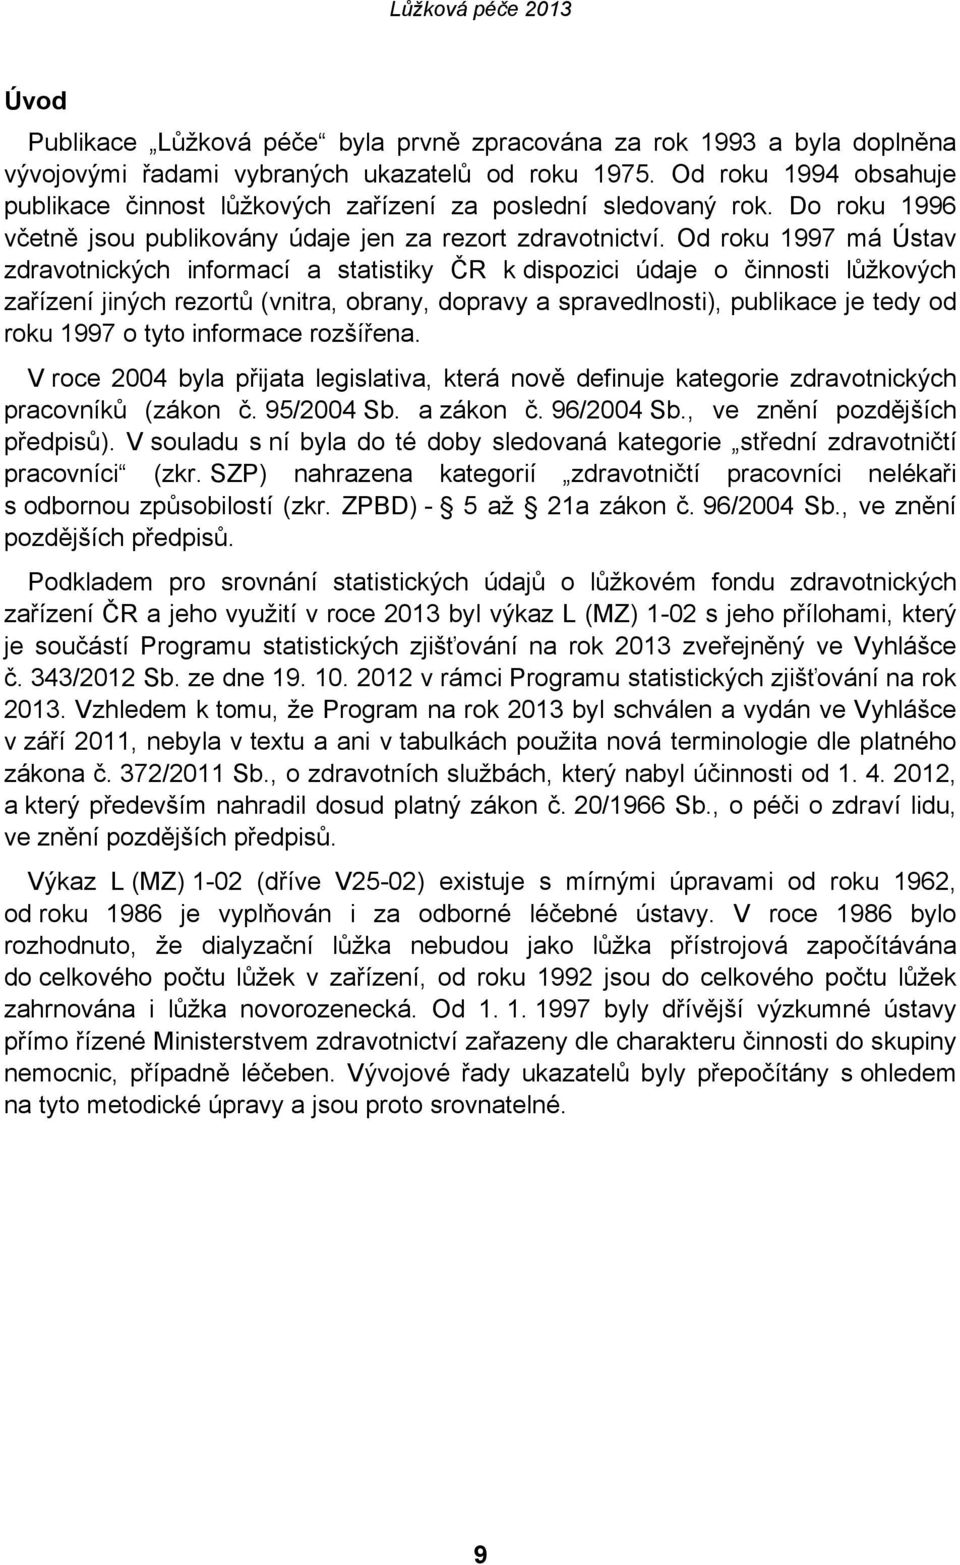 Od roku 1997 má Ústav zdravotnických informací a statistiky ČR k dispozici údaje o činnosti lůžkových zařízení jiných rezortů (vnitra, obrany, dopravy a spravedlnosti), publikace je tedy od roku 1997